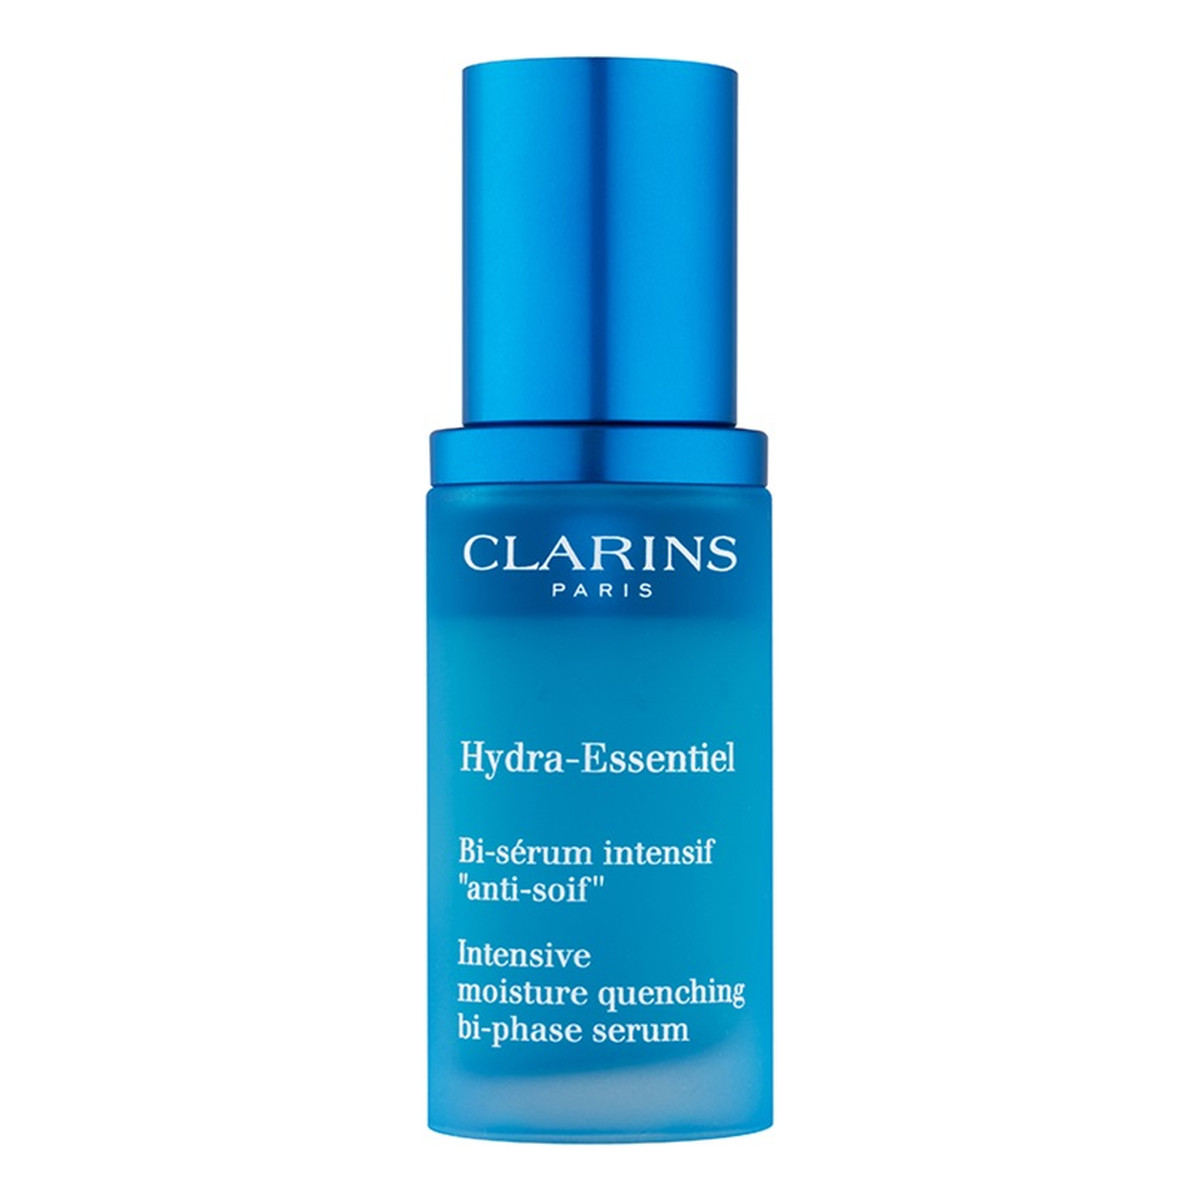 Clarins Hydra-Essentiel dwufazowe serum nawilżające do twarzy 30ml